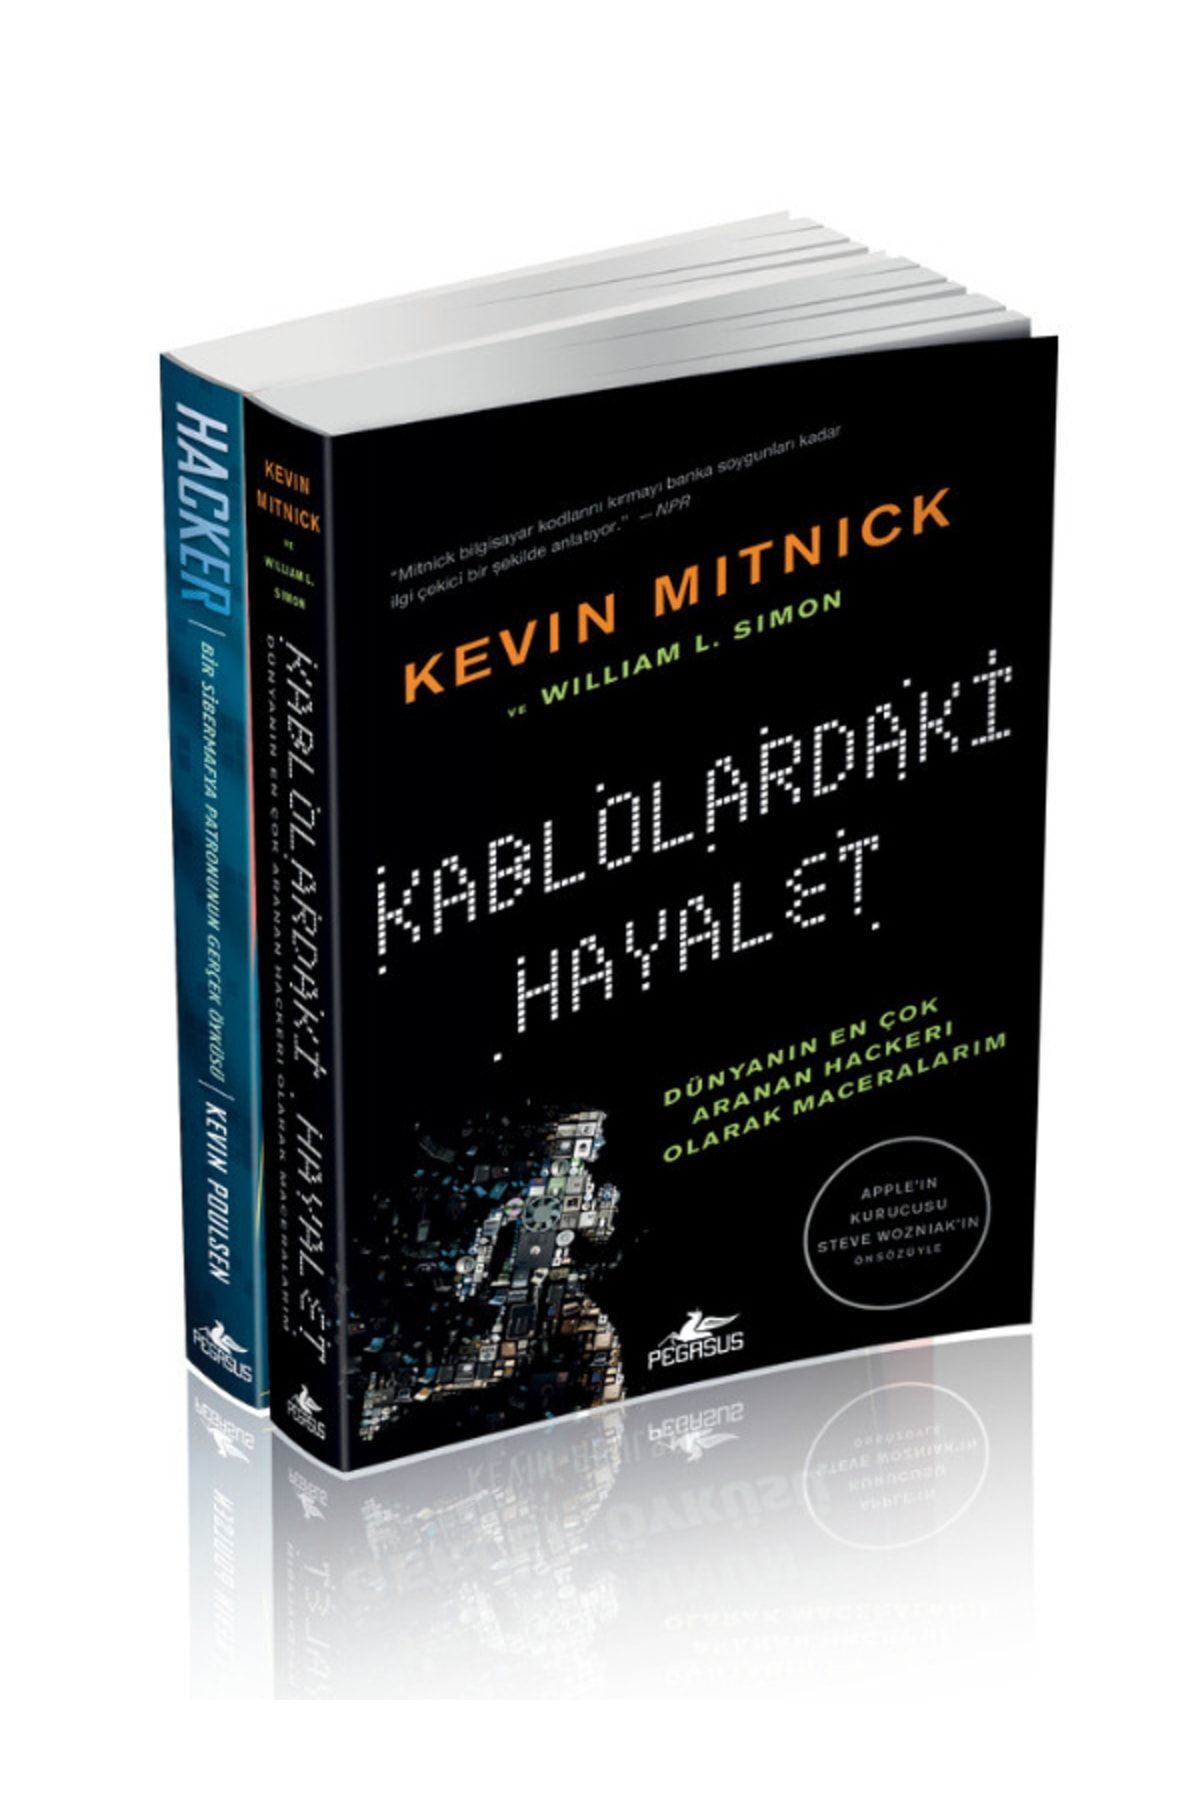 Pegasus Yayınları Ünlü Hackerlar Ve Hikayeleri 2 Kitap Set – Kevin Mitnick - Kevin Poulsen